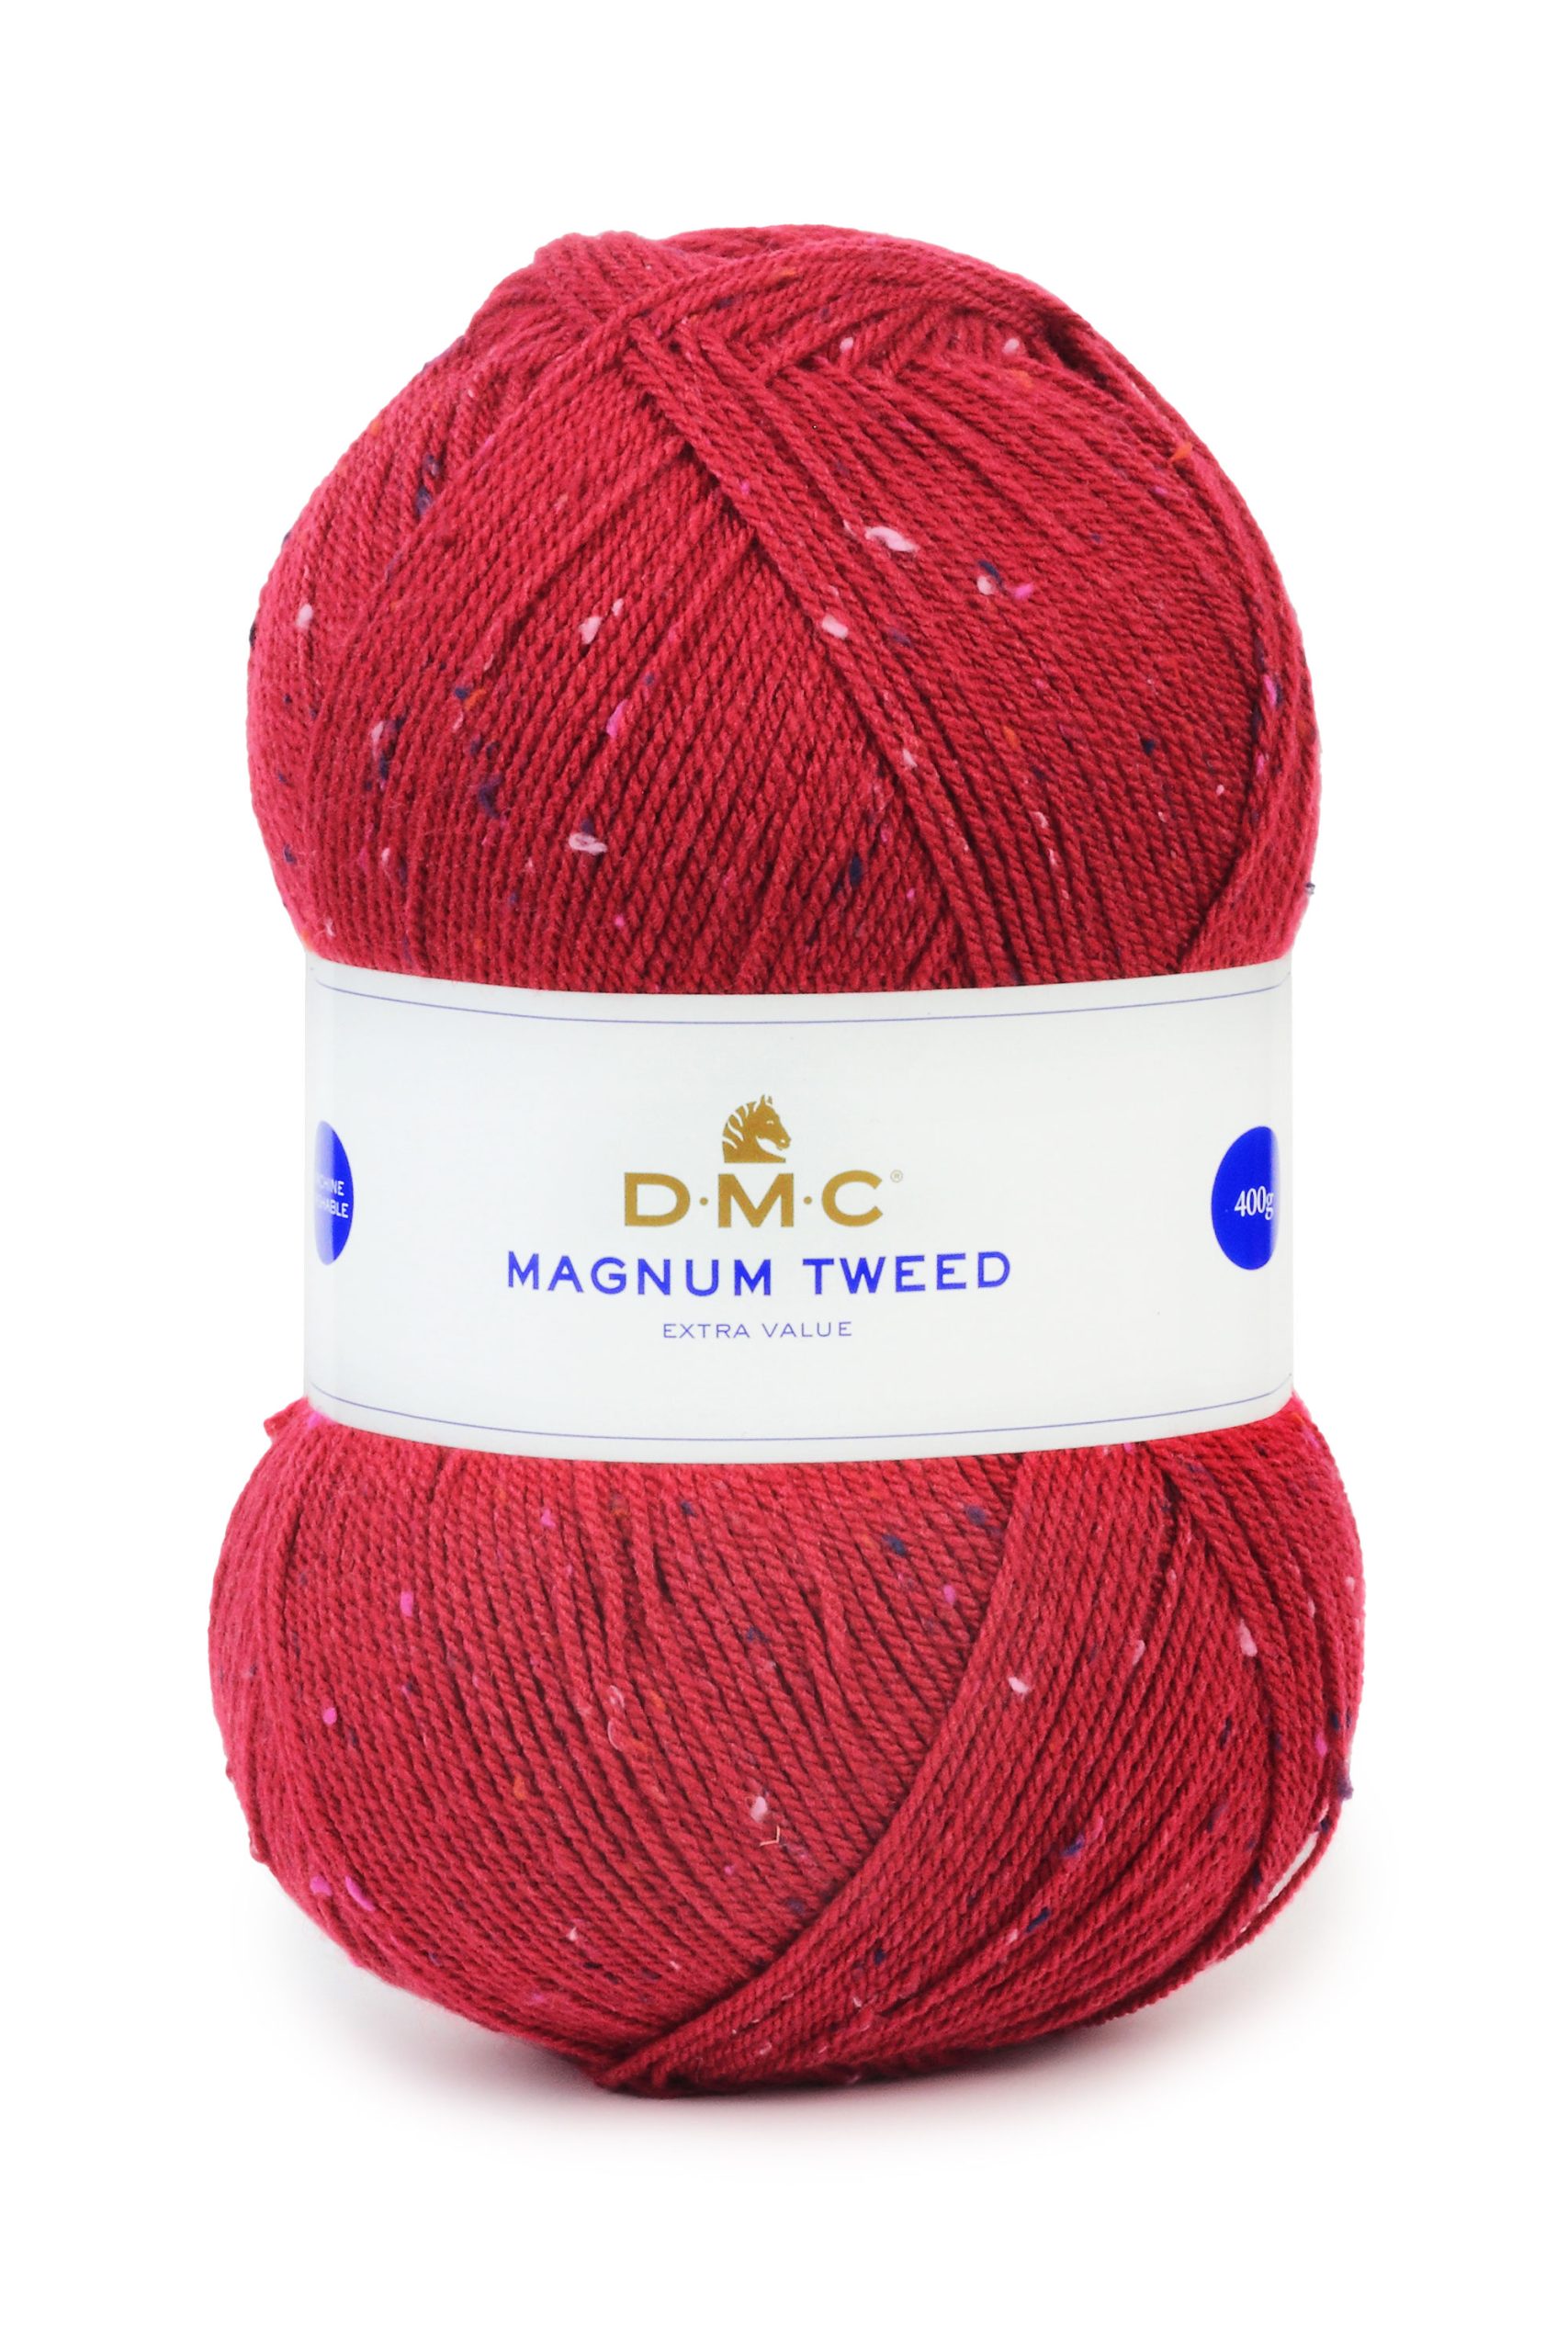 Lana Dmc Magnum Tweed Colore 52